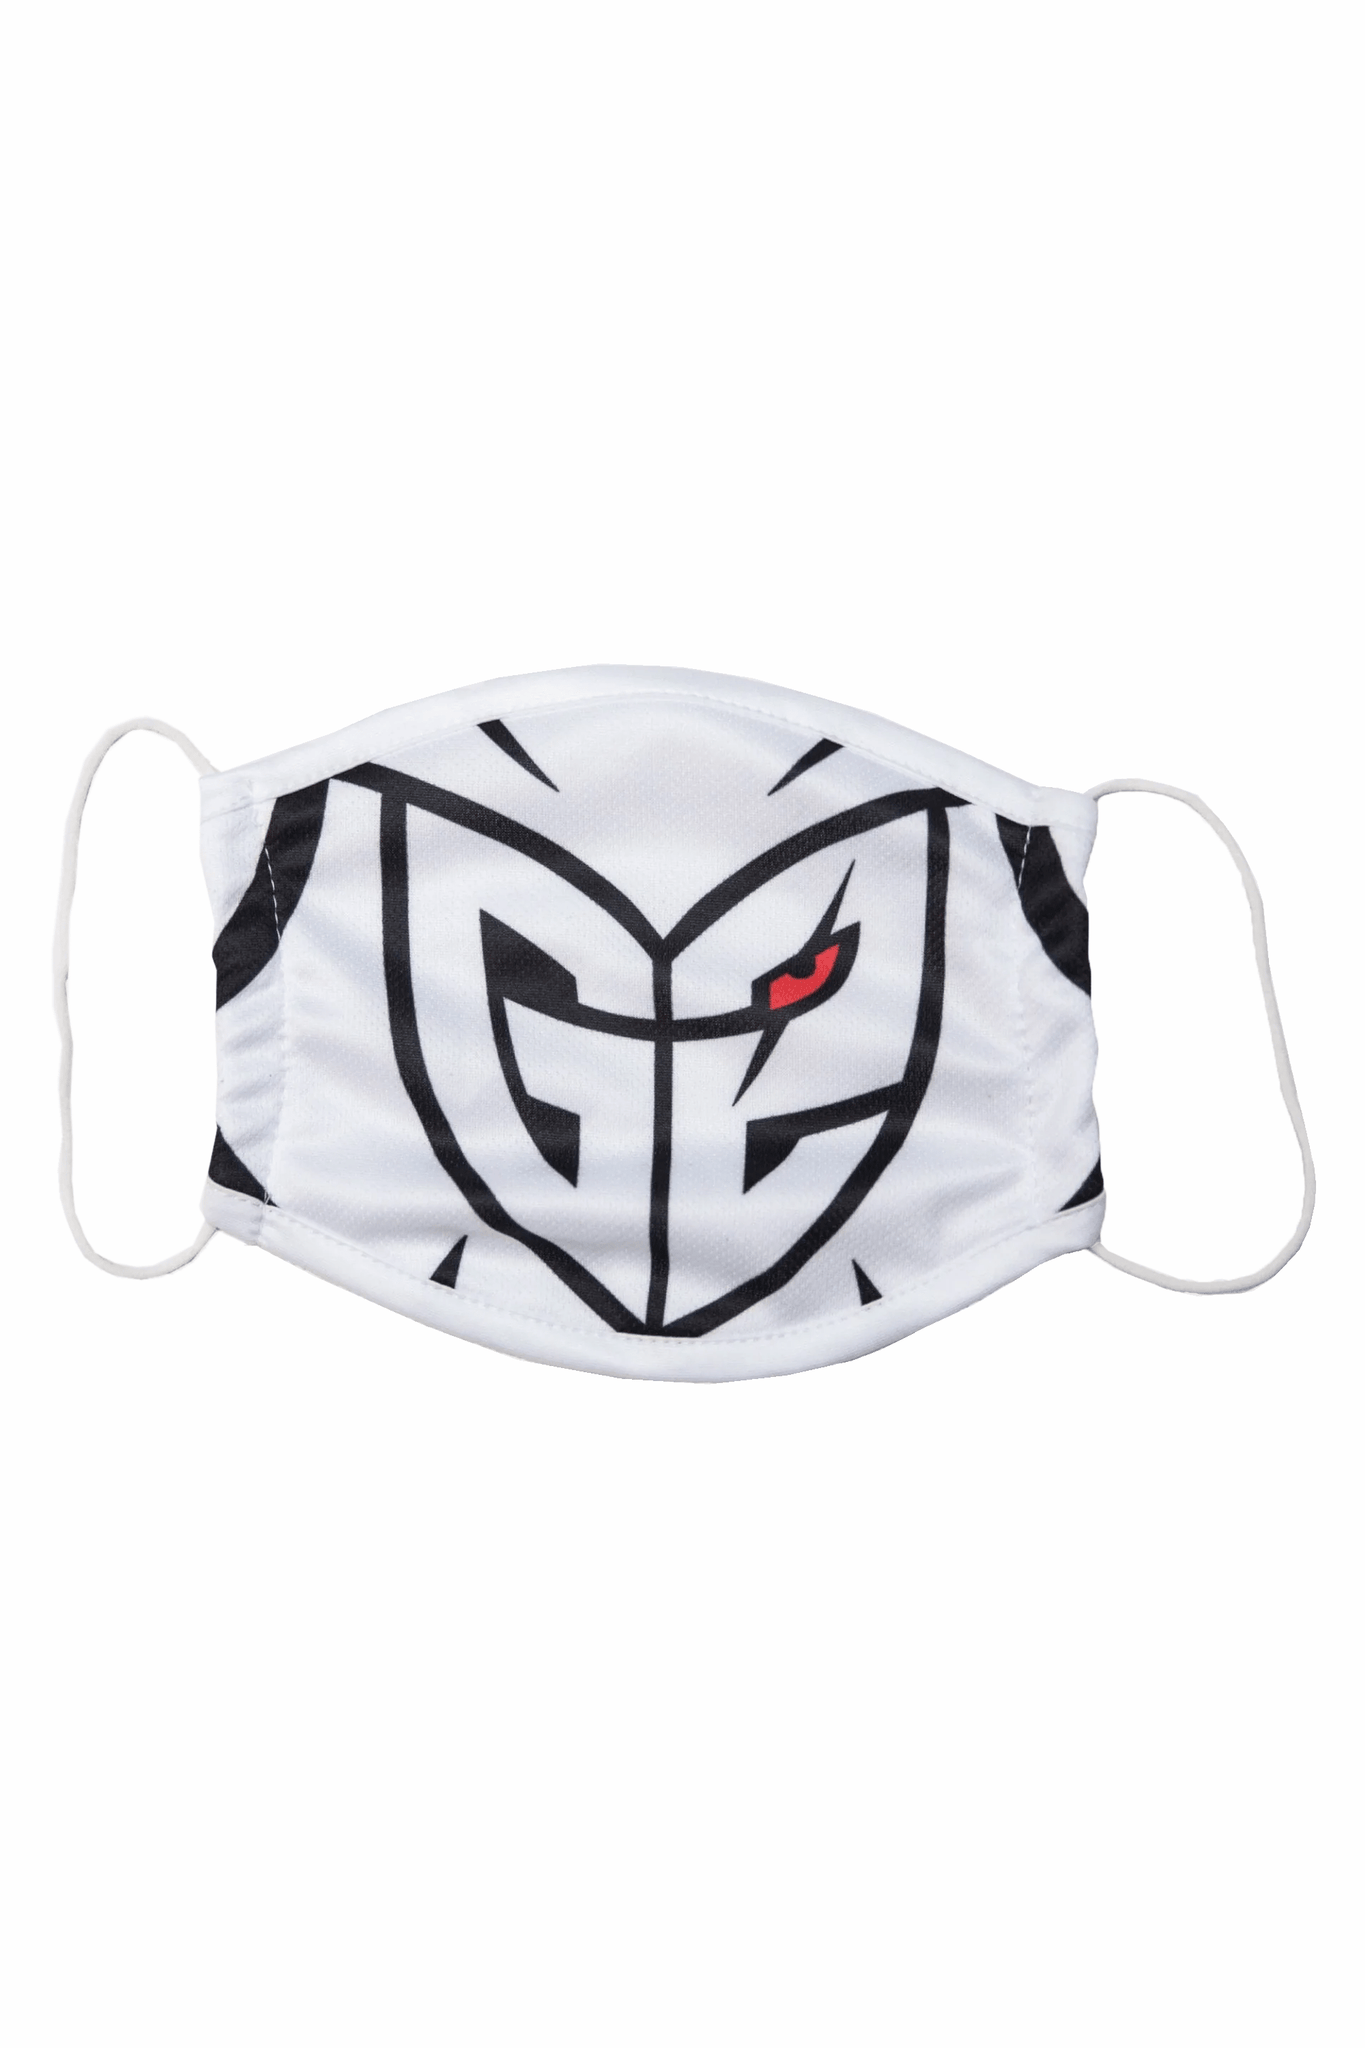 G2 Face Mask - White